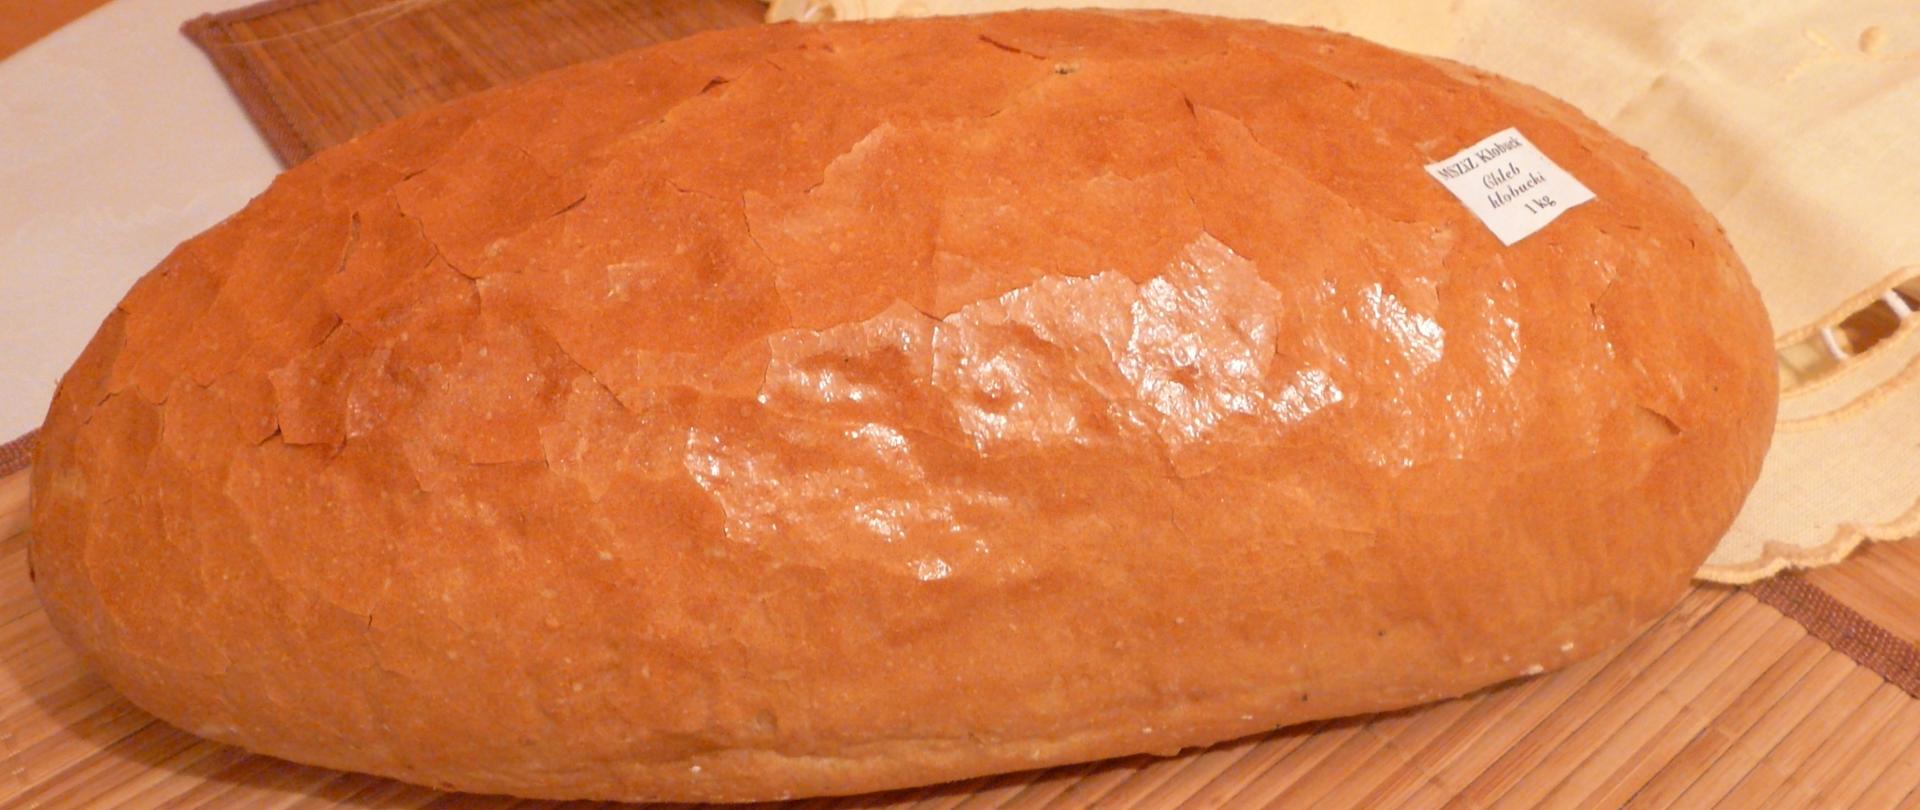 chleb kłobucki mieszany